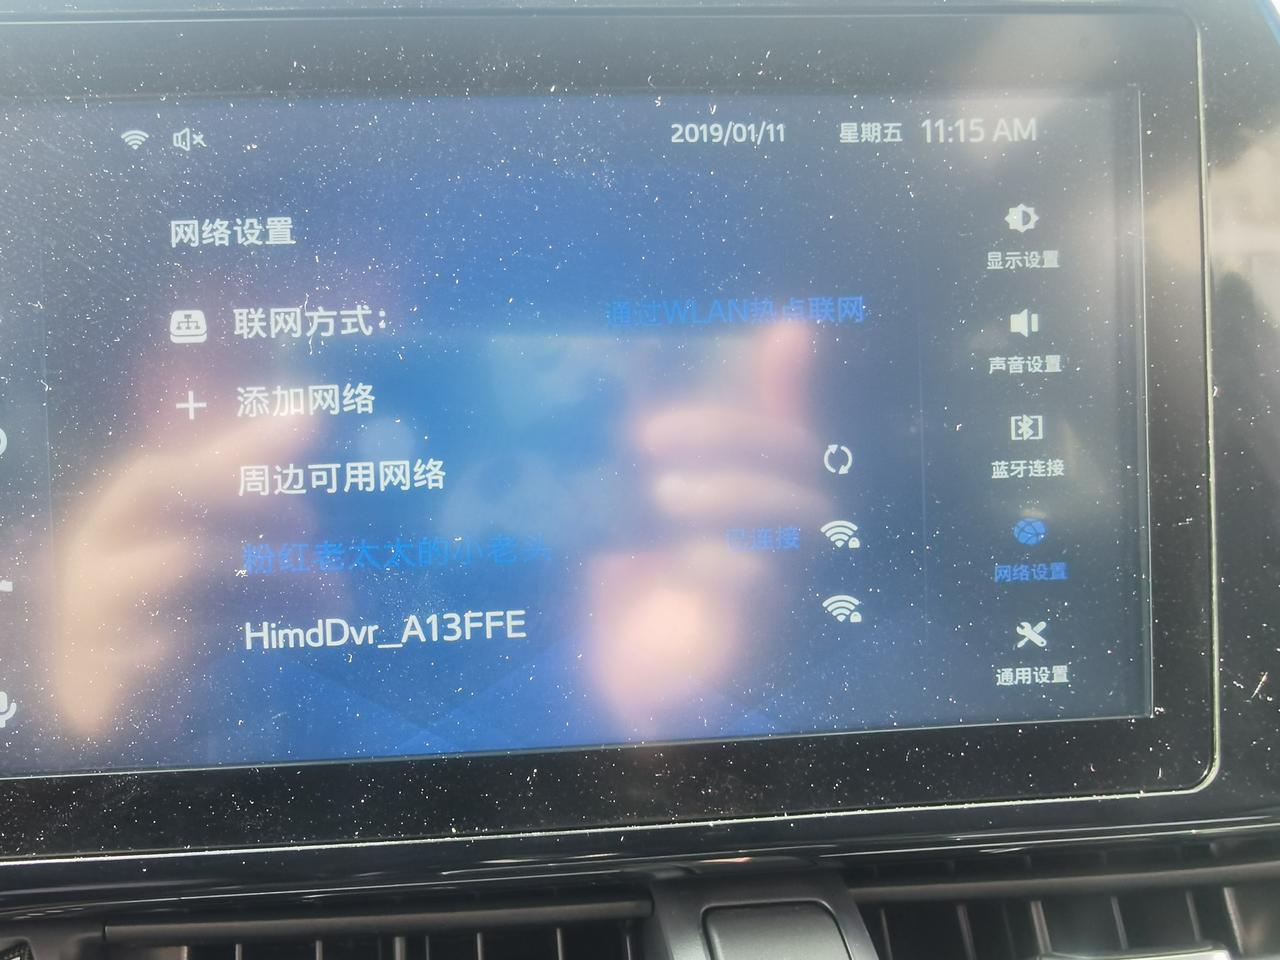 丰田C-HR 各位大神，我的车从上个月25号突然之间显示无网络，不能网络连接，连上自己的手机热点还是显示请检查网络，到底